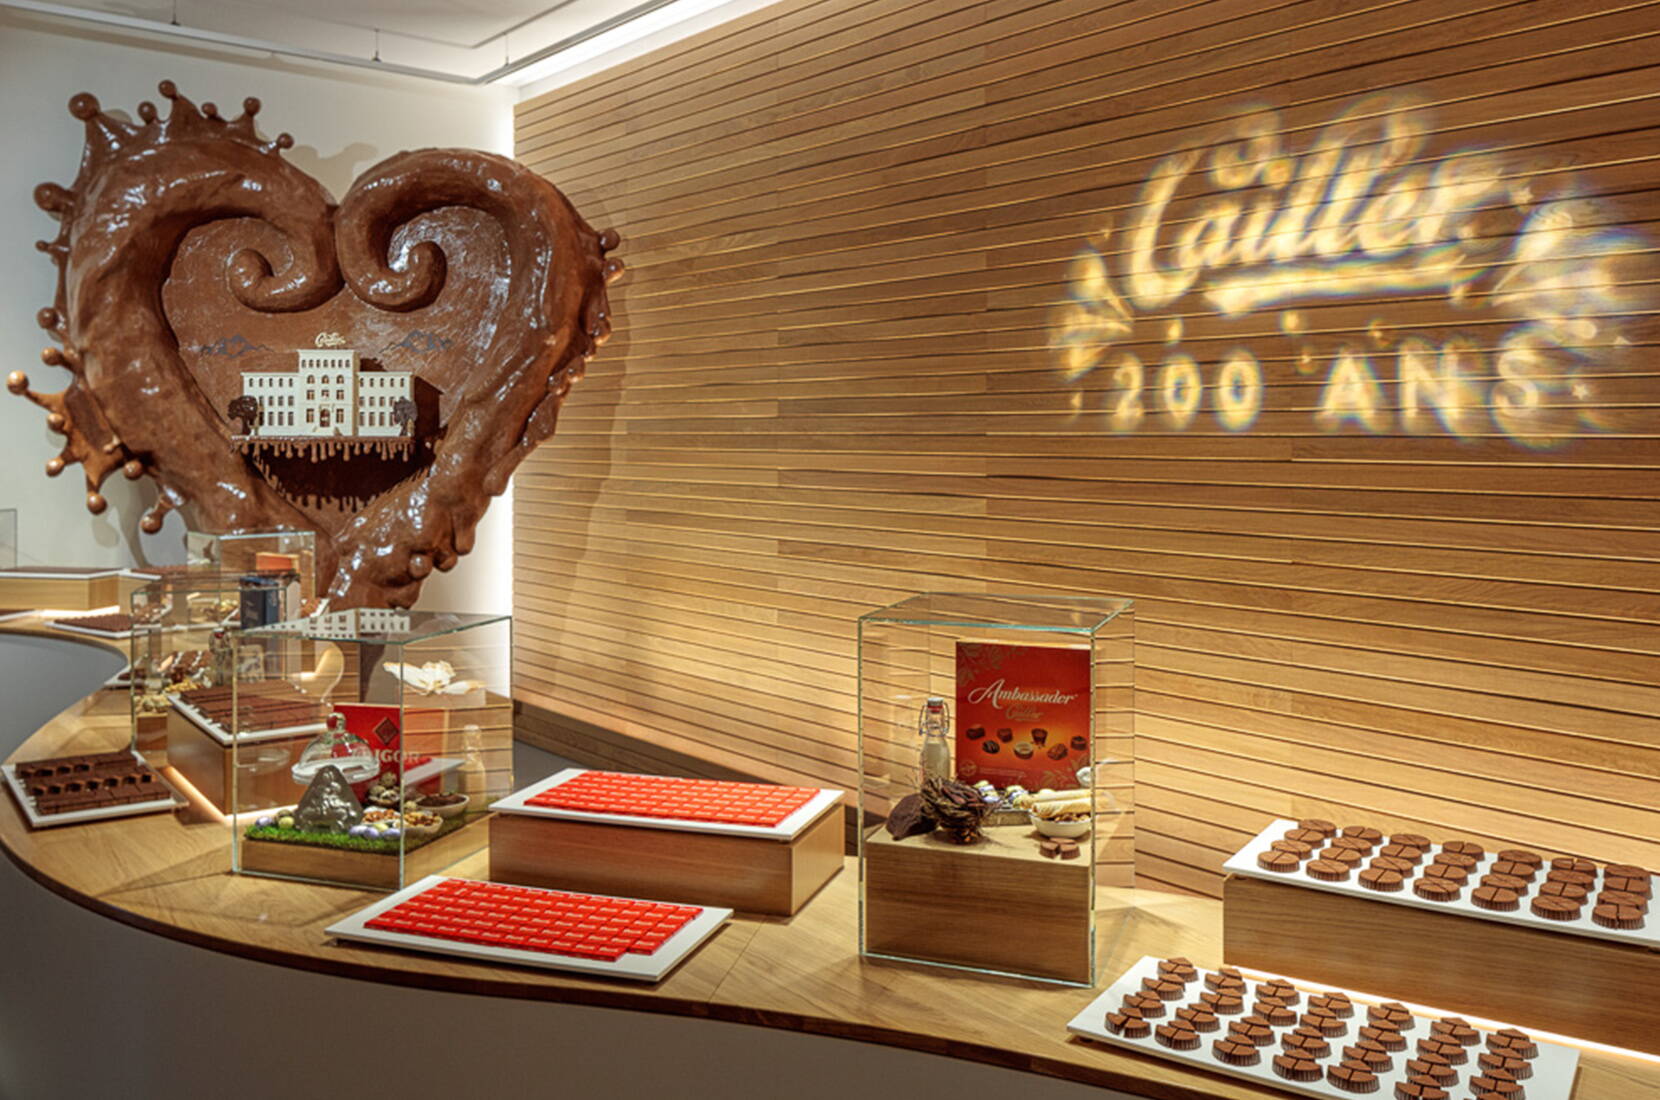 Immergetevi nel dolce mondo del cioccolato visitando la Maison Cailler. Il tour interattivo della fabbrica Cailler vi condurrà per circa un'ora in un affascinante viaggio attraverso la storia del cioccolato, dagli Aztechi alle innovazioni di oggi.